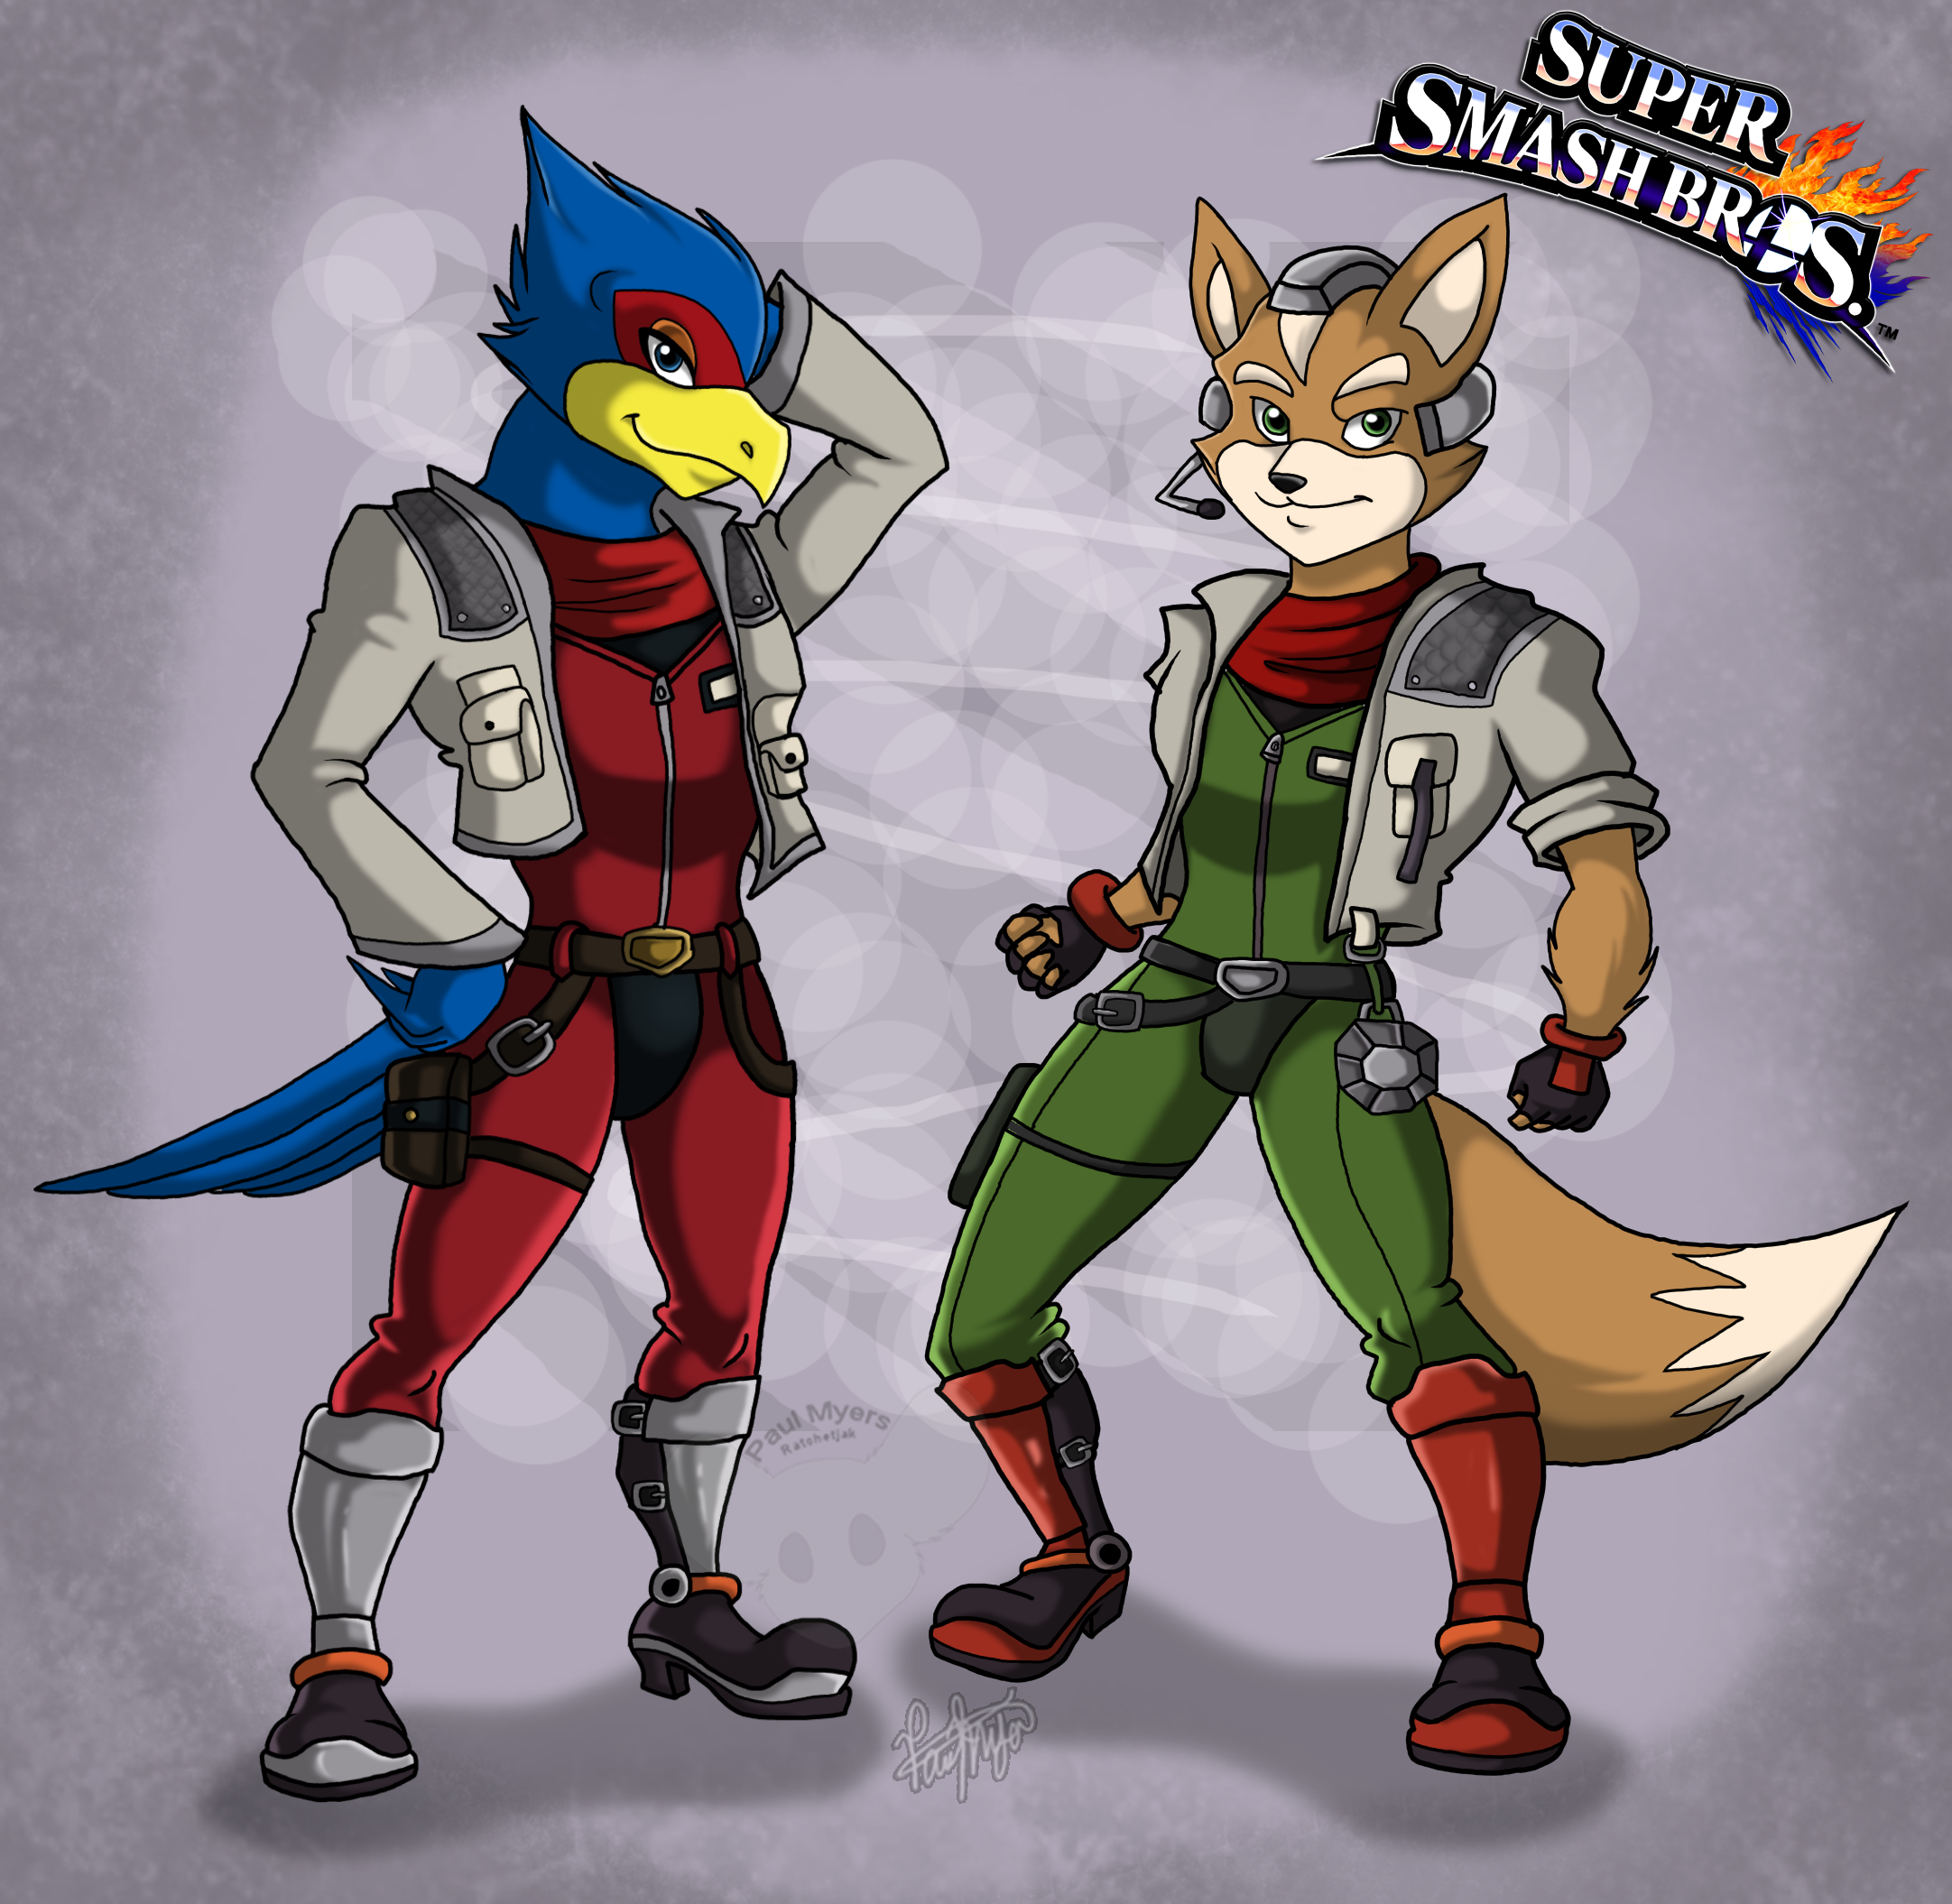 Fox and Falco + Super Smash Bros